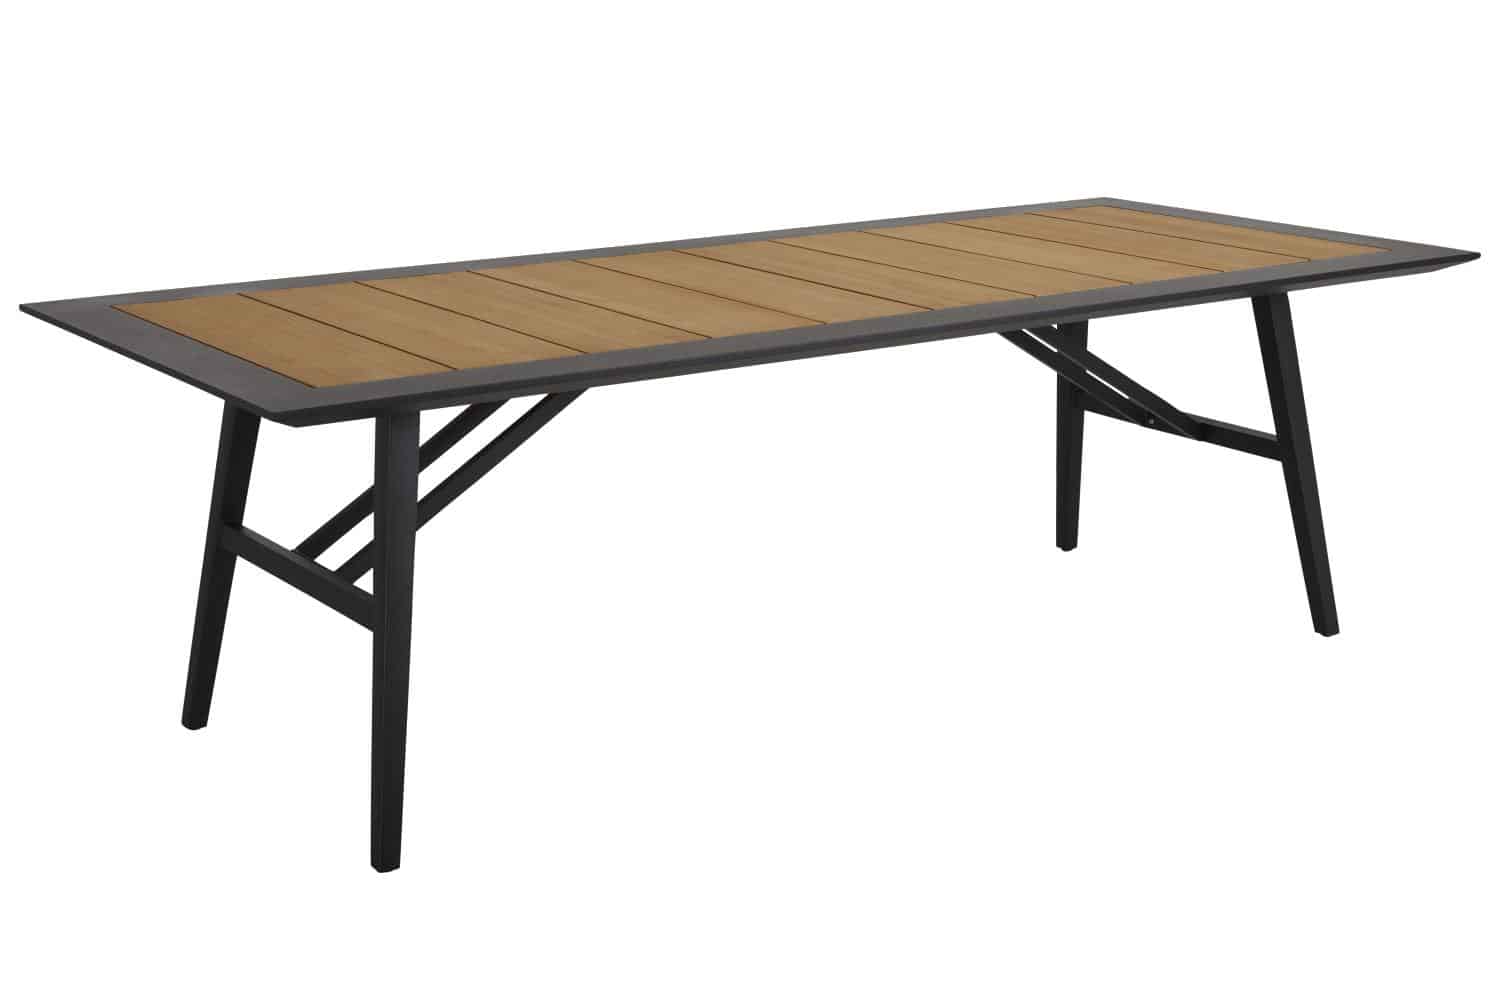 Brafab Chios Matbord 240x100 cm är ett förstklassigt matbord med svart aluminiumram och infälld topp med tvärgående ribbor i teak.